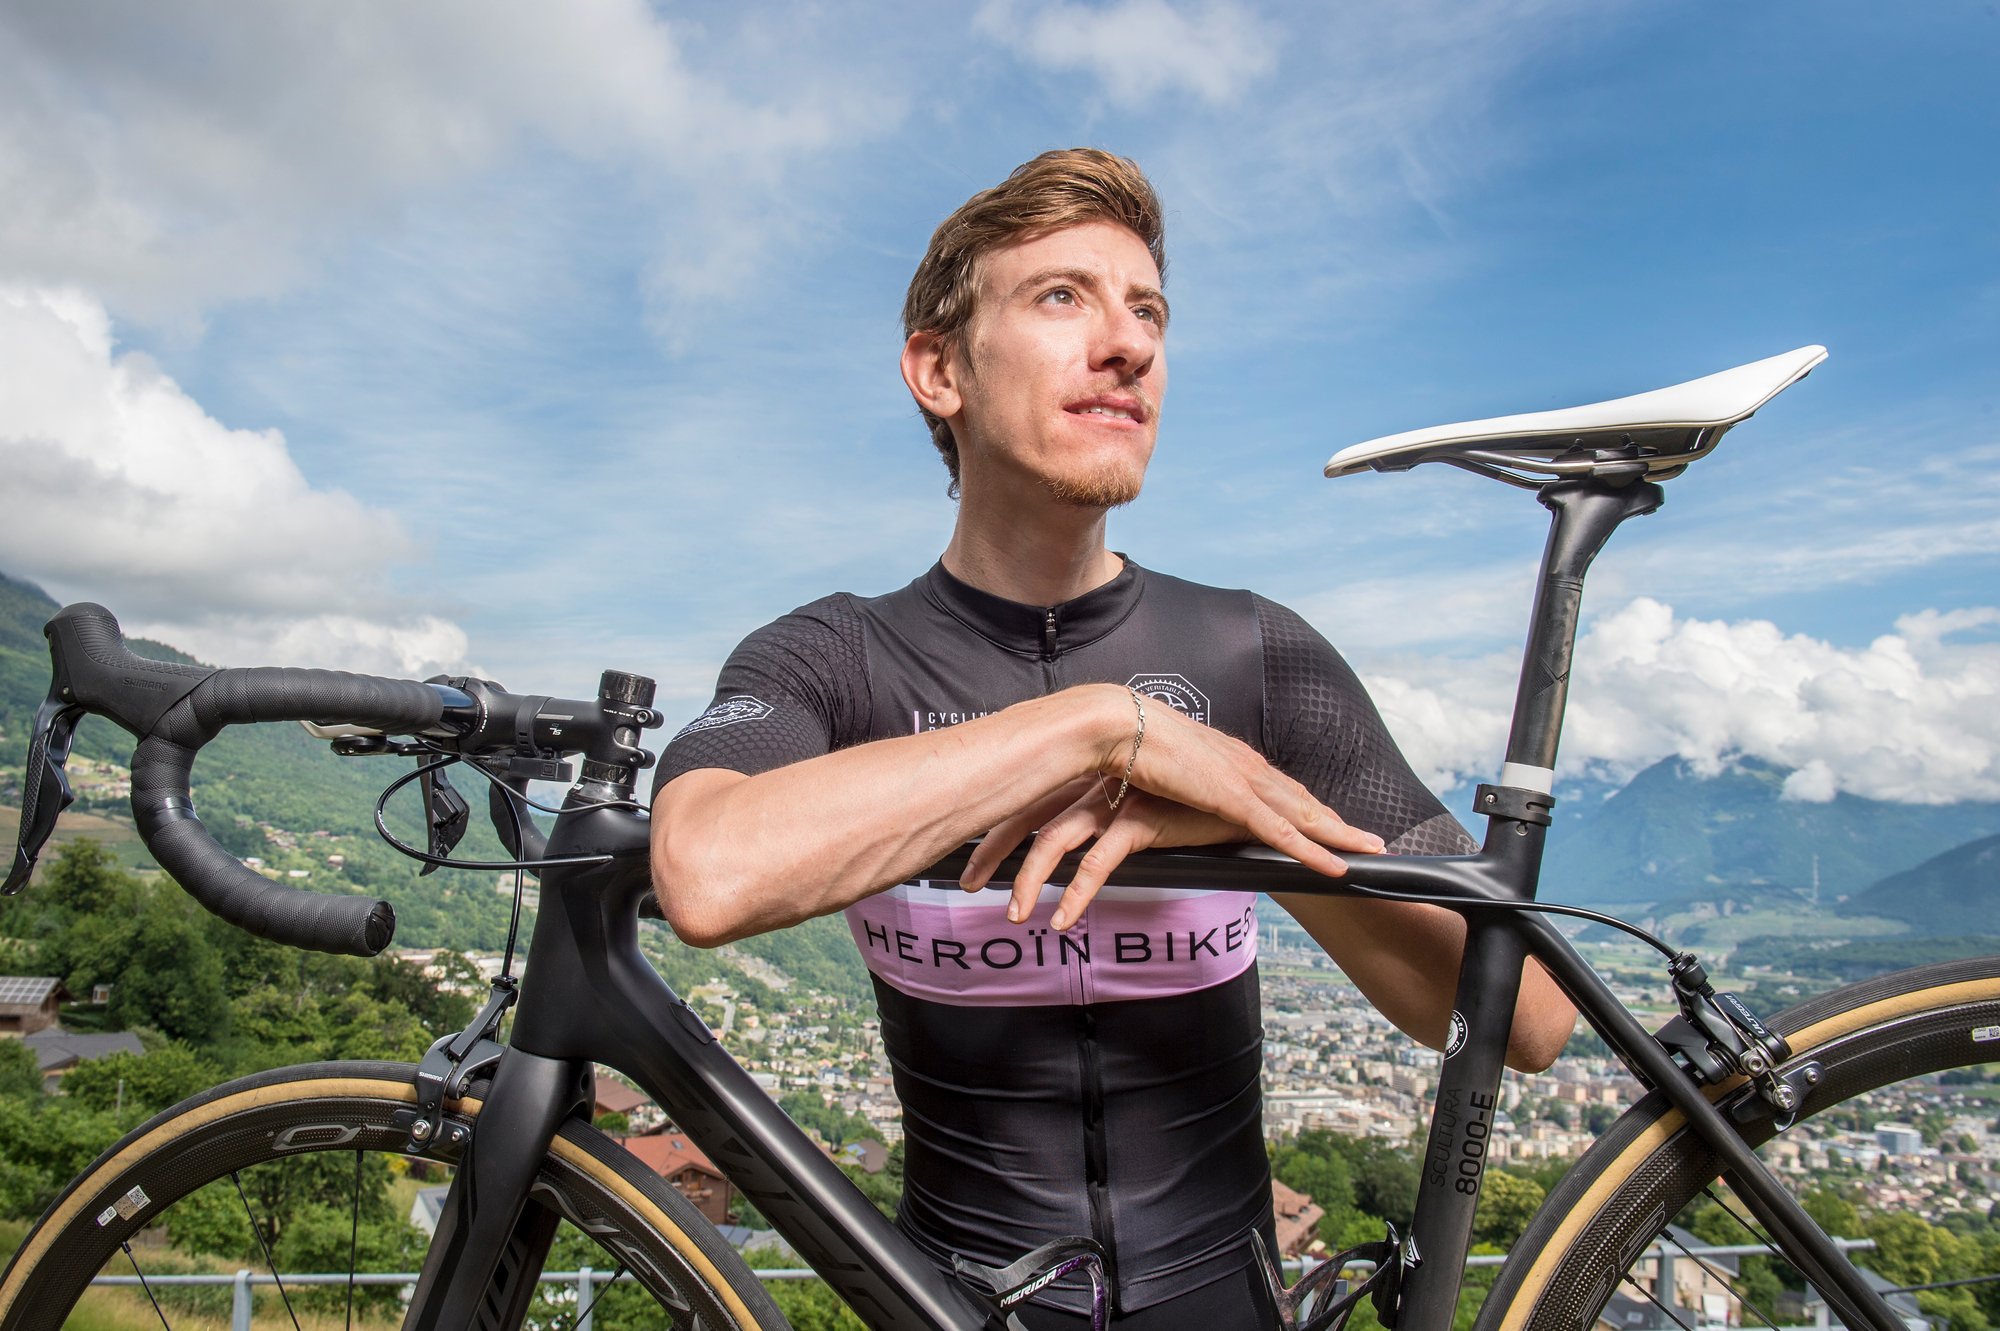 Maxime Galletti est plutôt songeur face aux affaires de dopage au sein des cyclosportives.